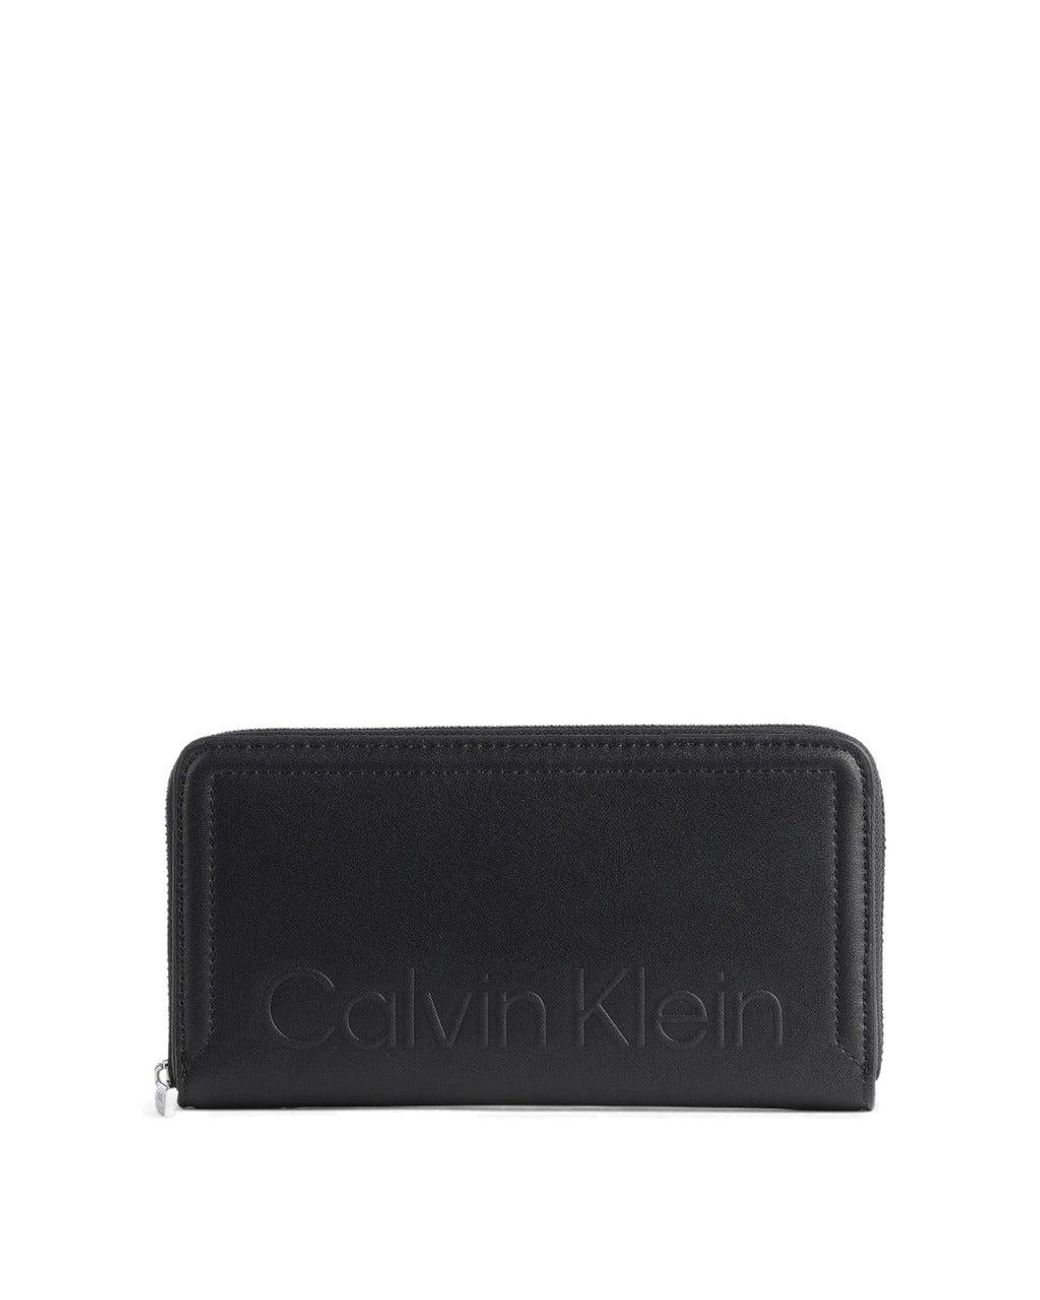 Calvin Klein Wallet in Black | Lyst